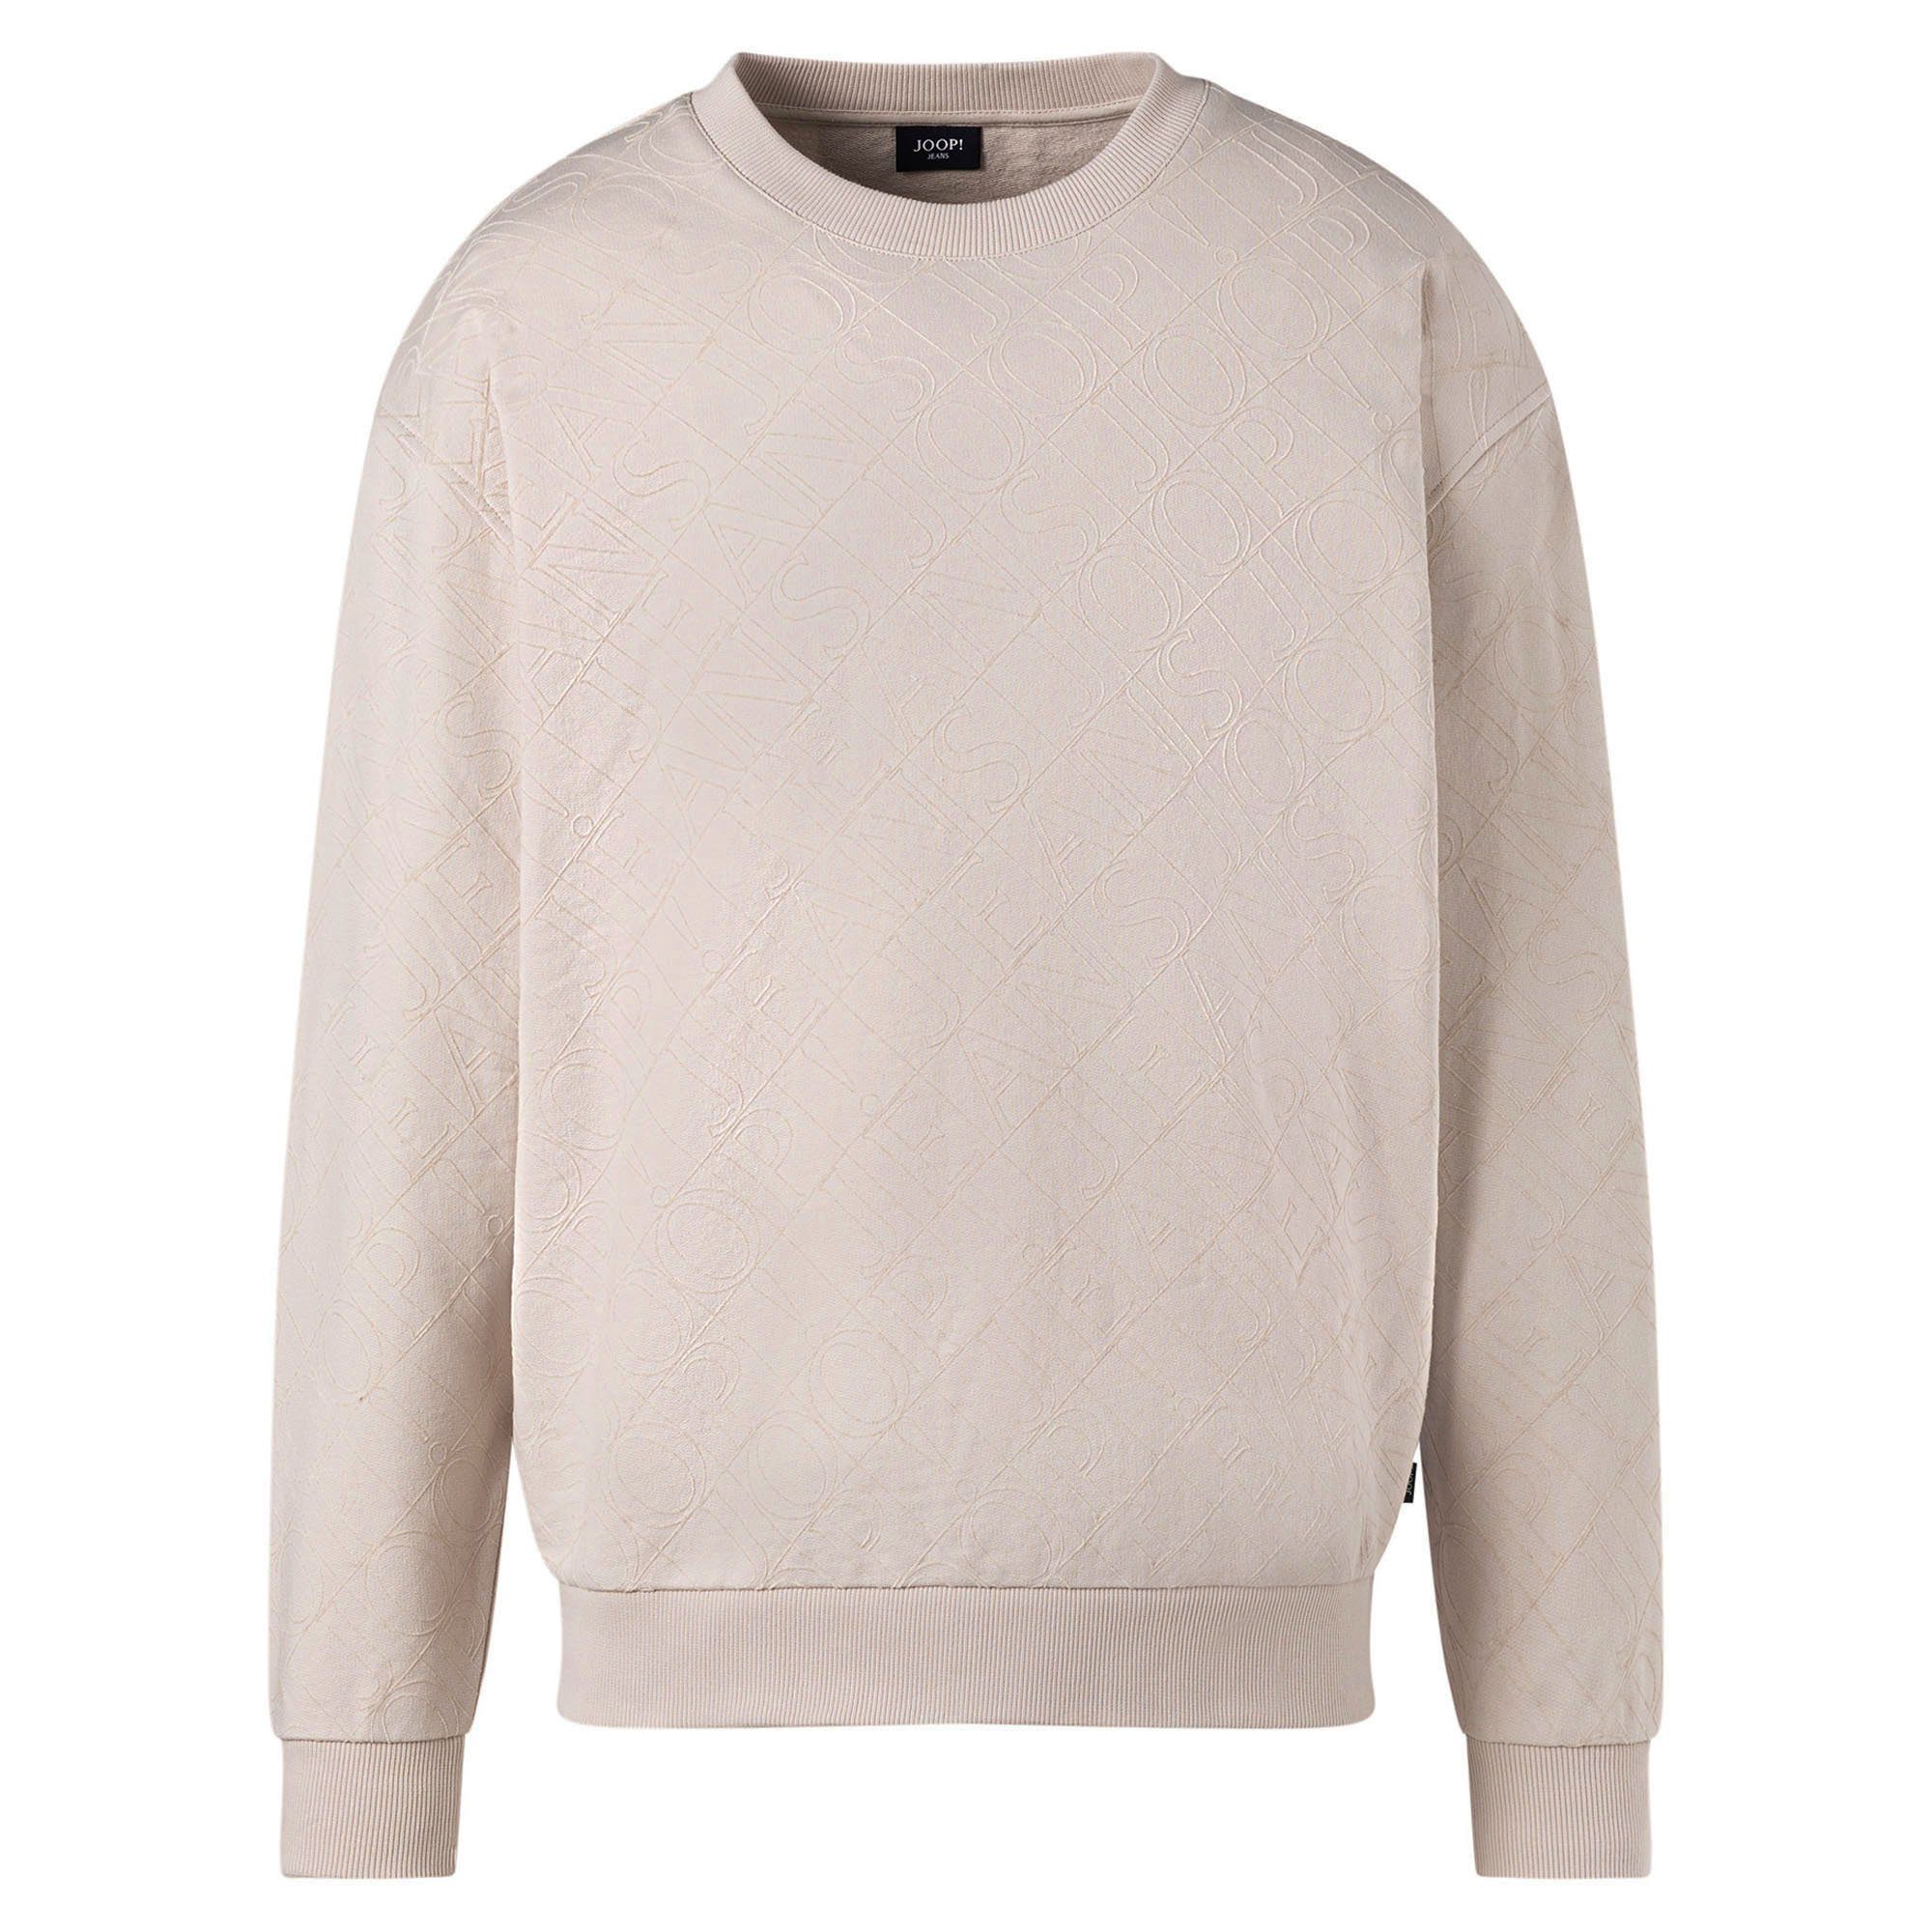 Joop Jeans Sweatshirt Herren Sweatshirt - Cayetano, Sweater, Rundhals Natur (Open White)